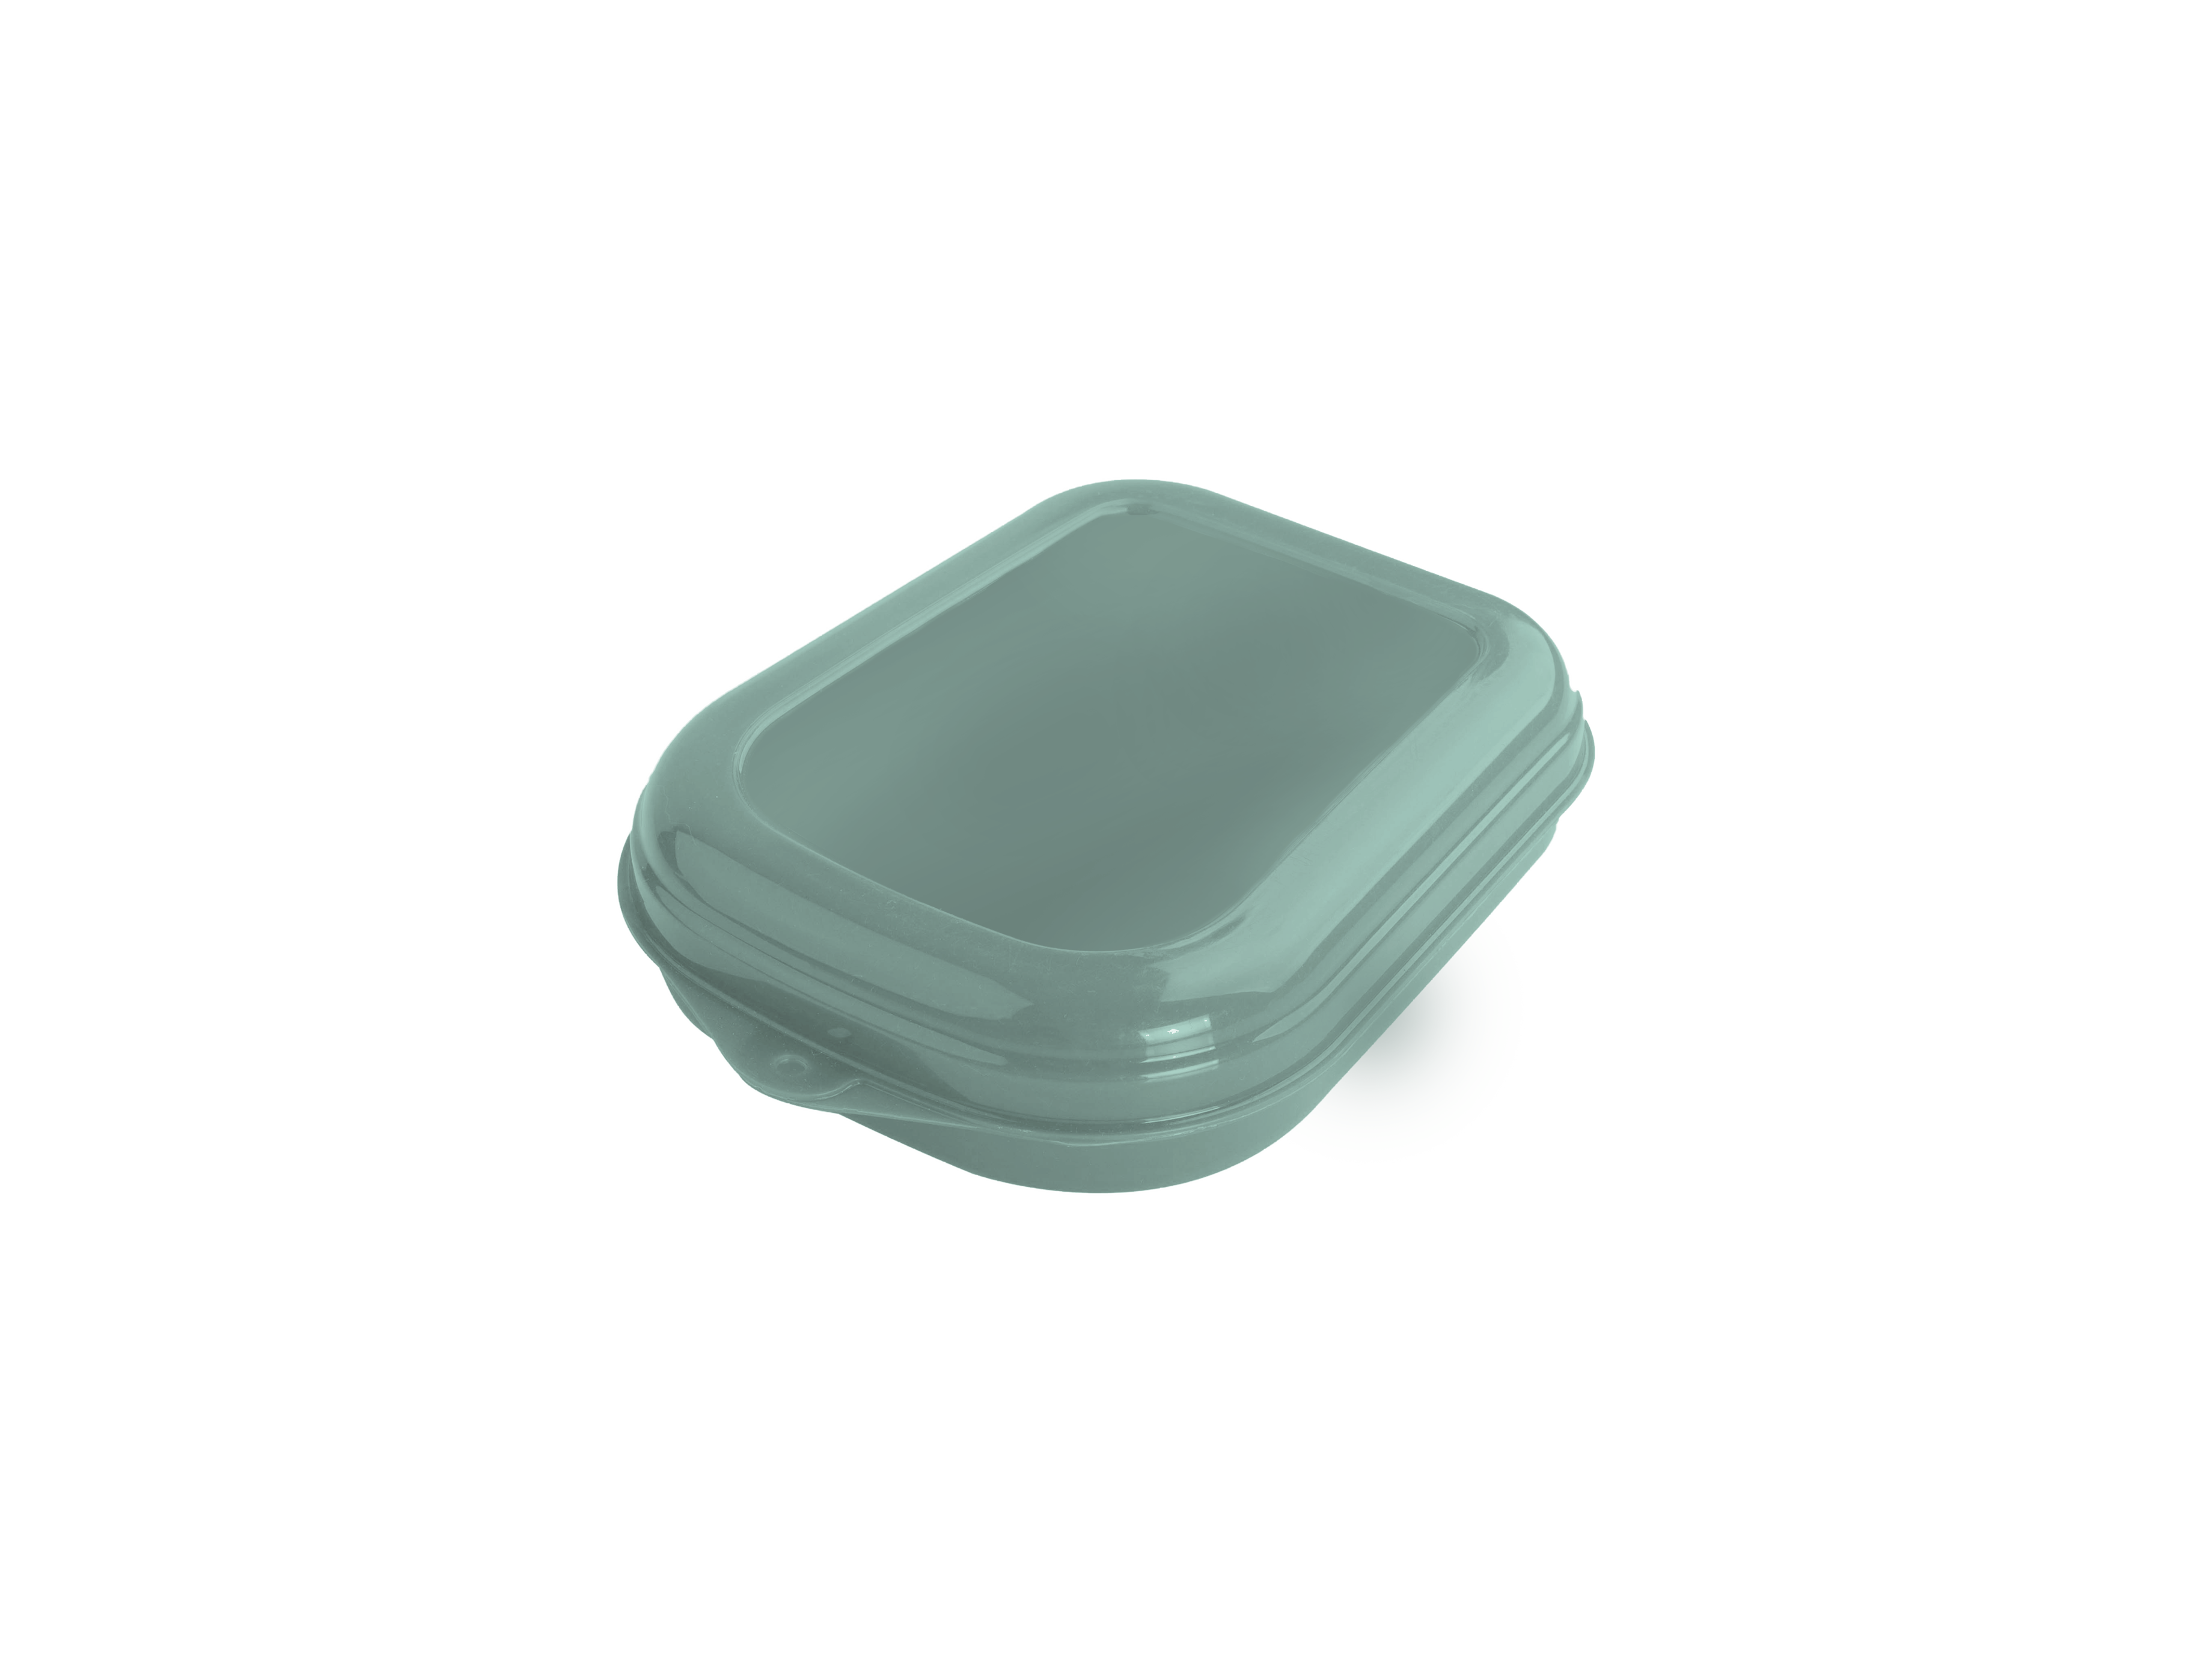 Imagem do produto: Sandwich container 5113